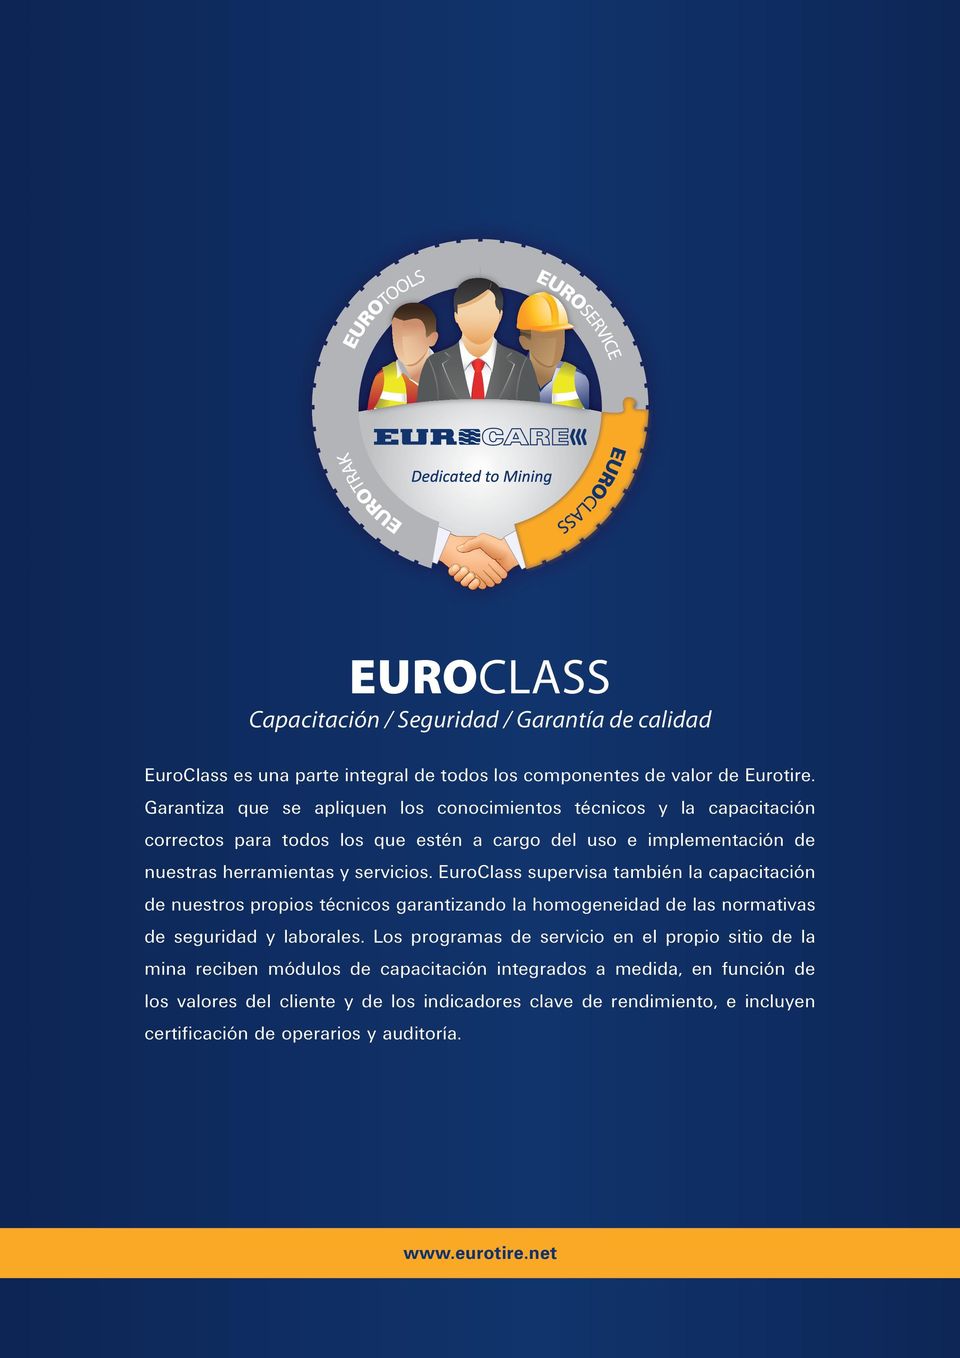 servicios. EuroClass supervisa también la capacitación de nuestros propios técnicos garantizando la homogeneidad de las normativas de seguridad y laborales.